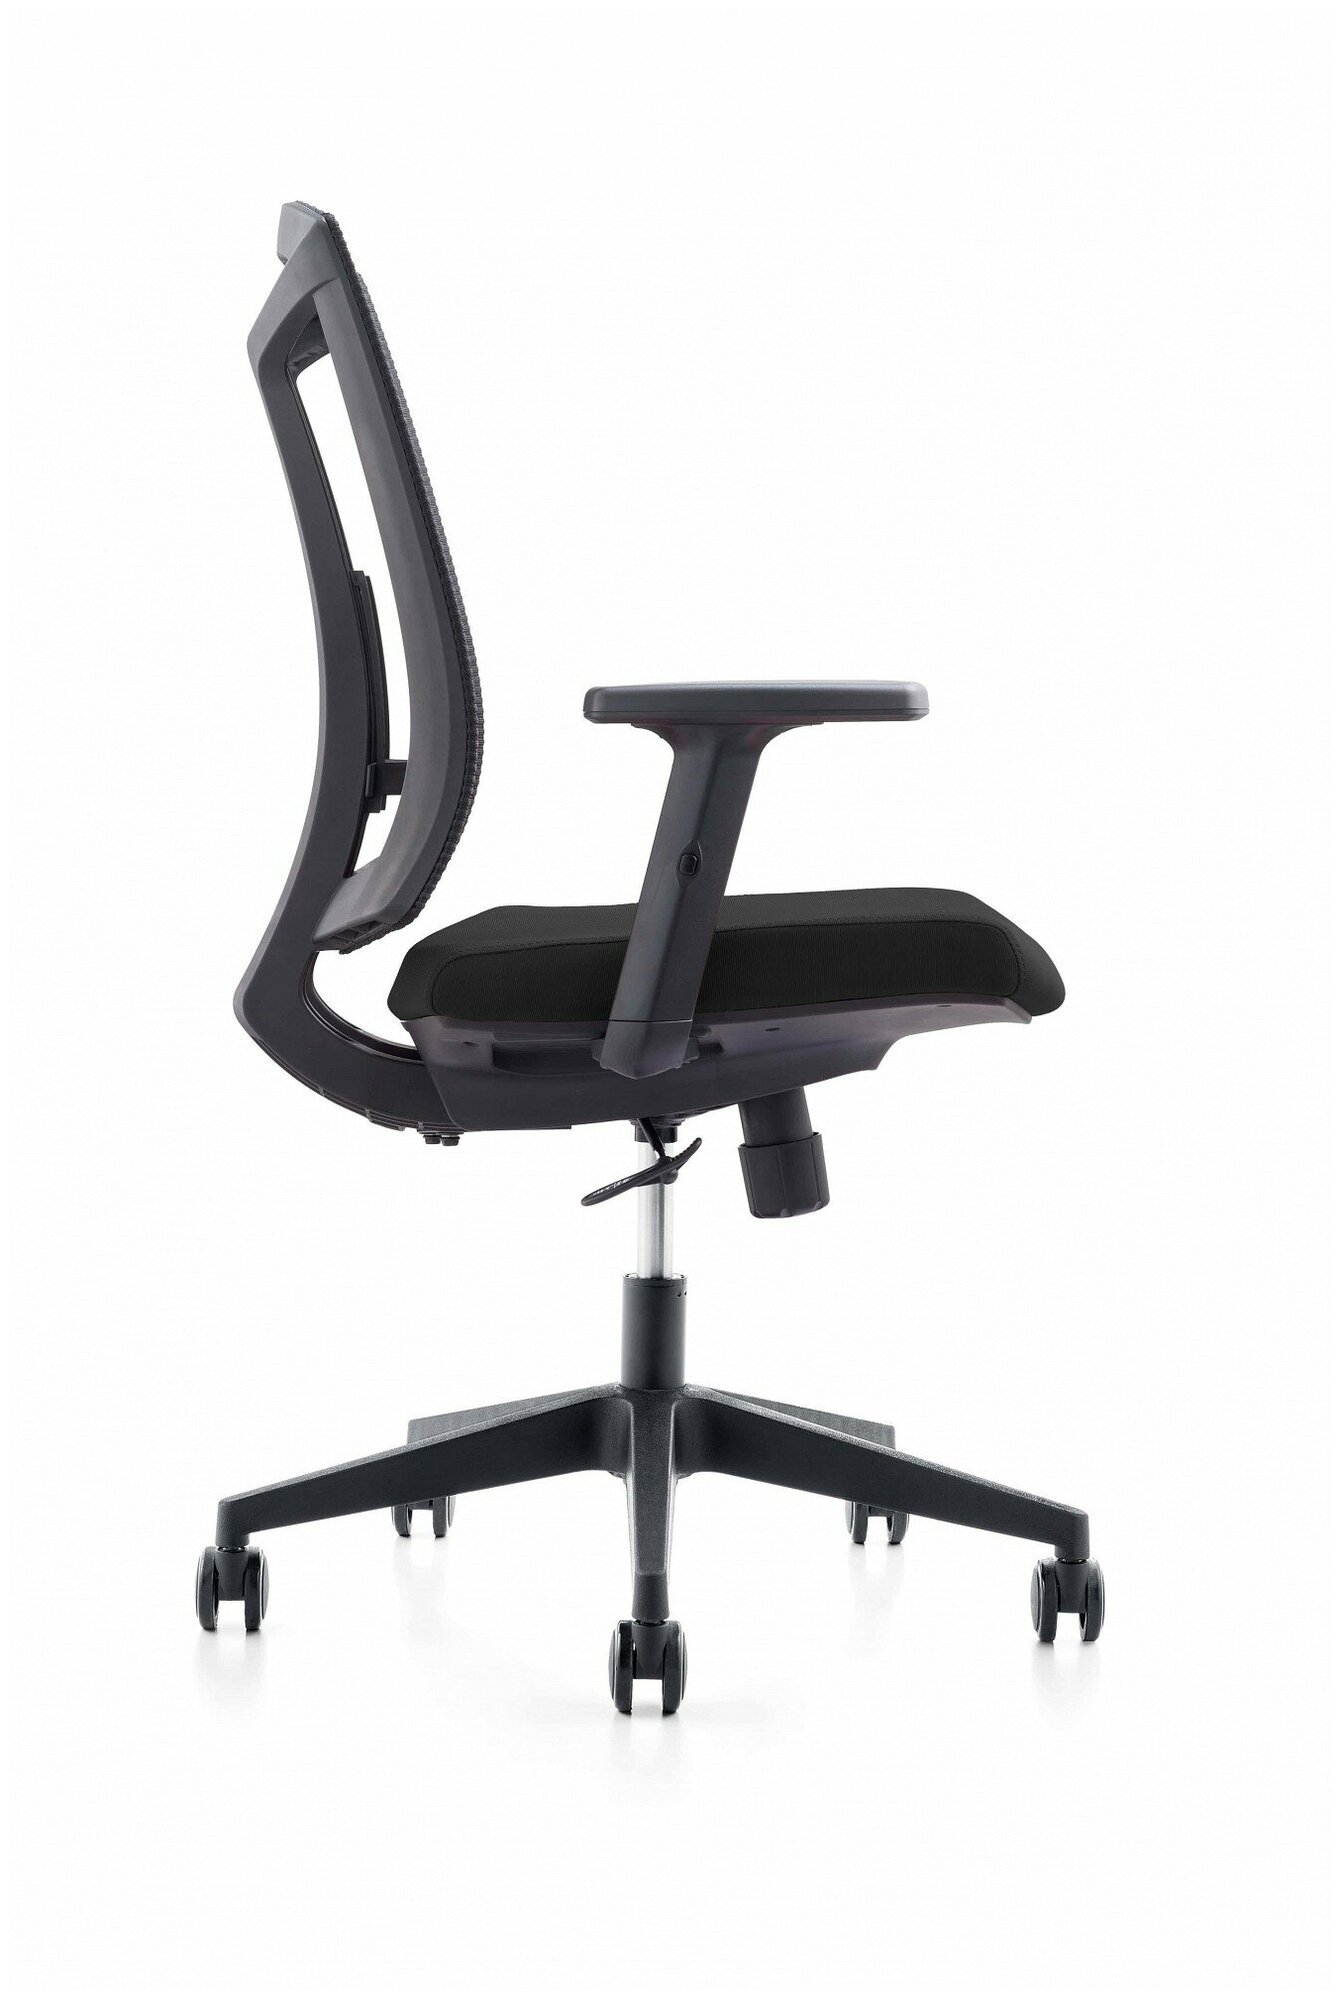 Компьютерное кресло College CLG-425 MBN-B офисное, обивка: текстиль, цвет: черный - фотография № 2